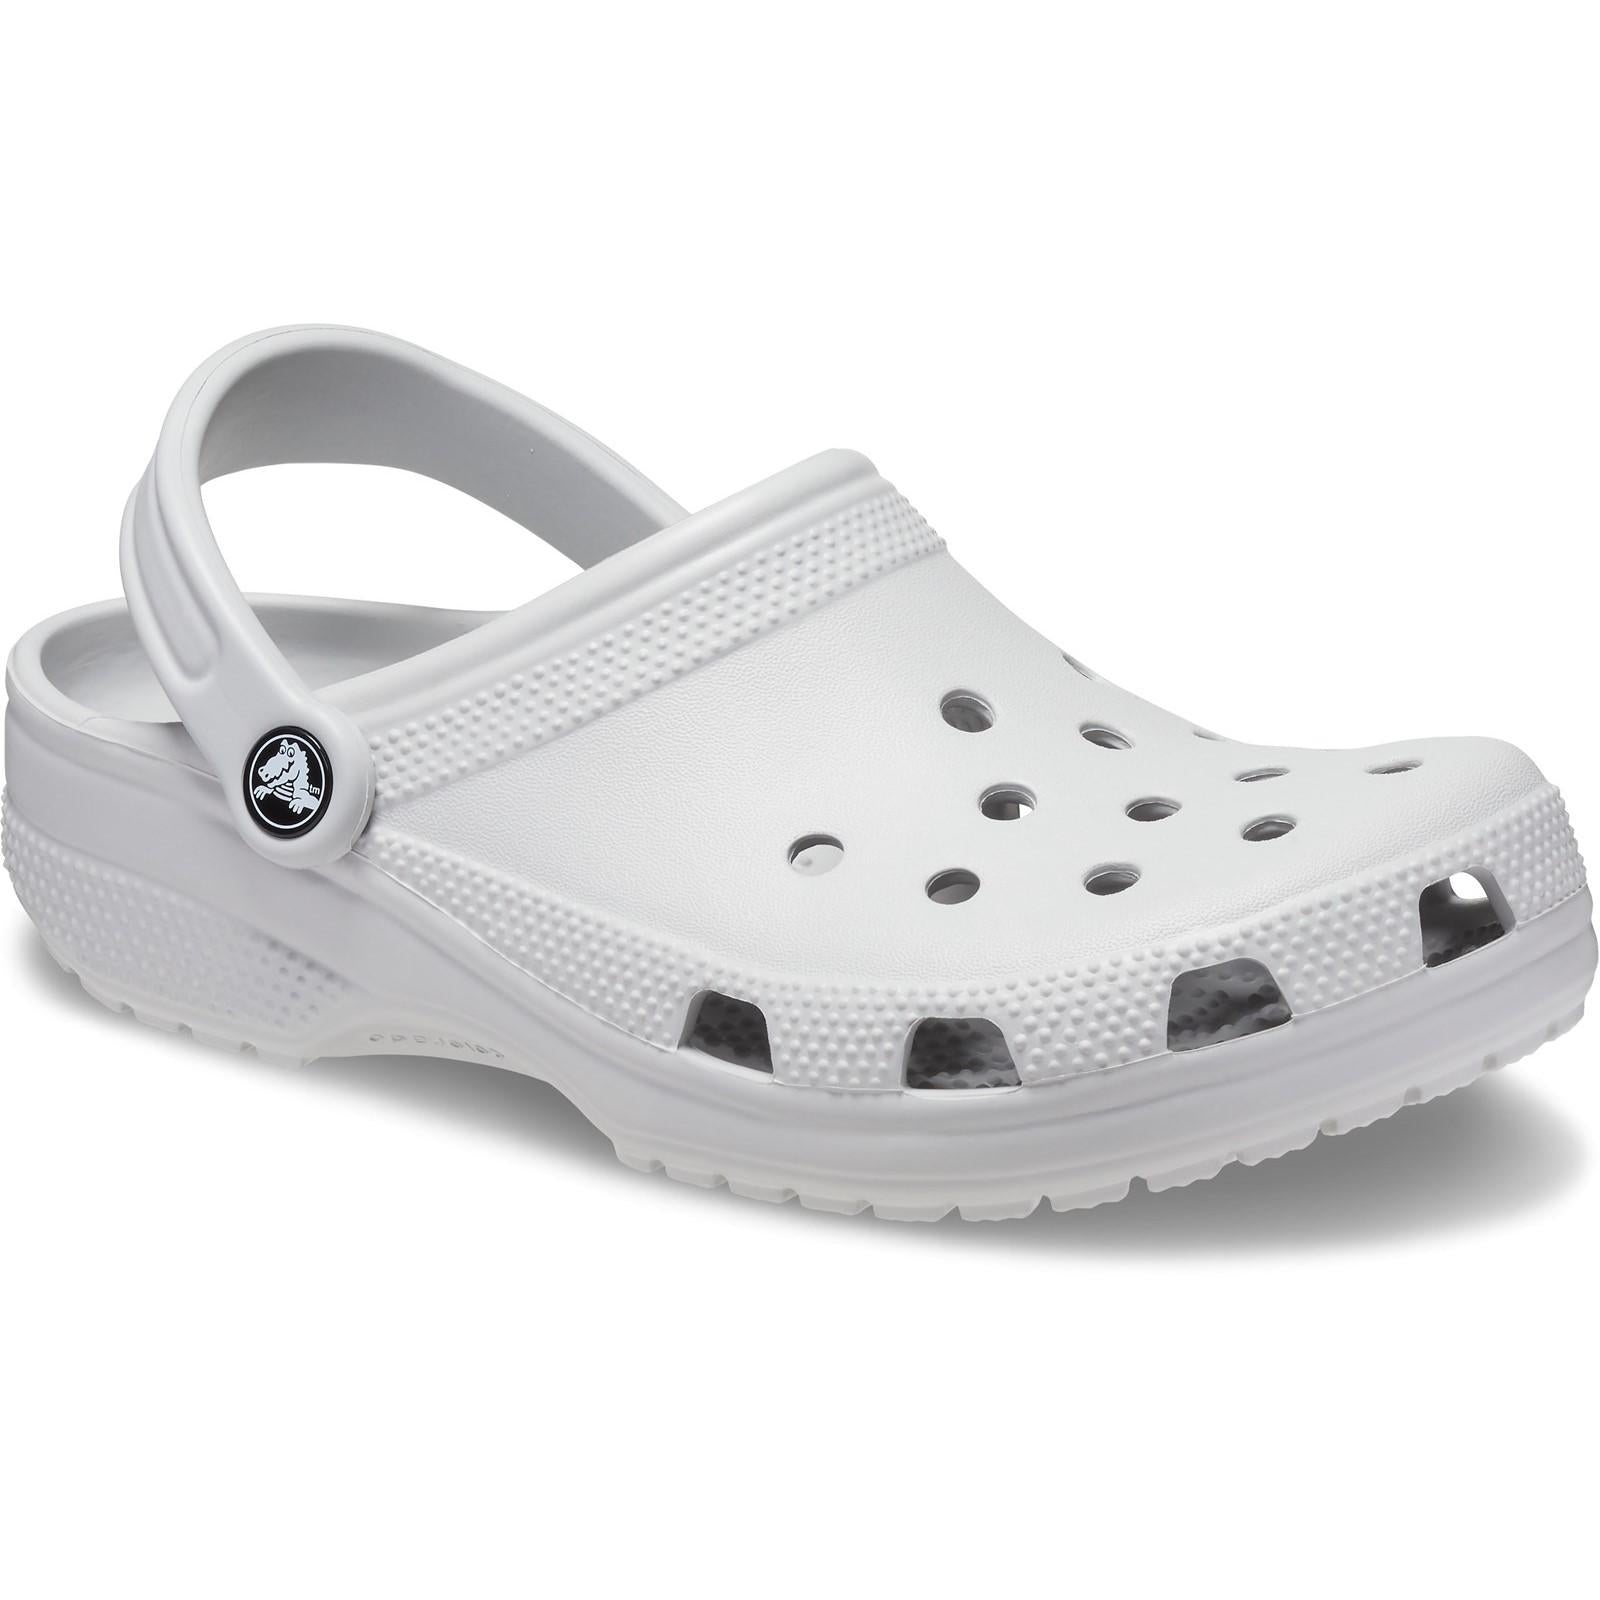 Crocs Classic Clog Sandals